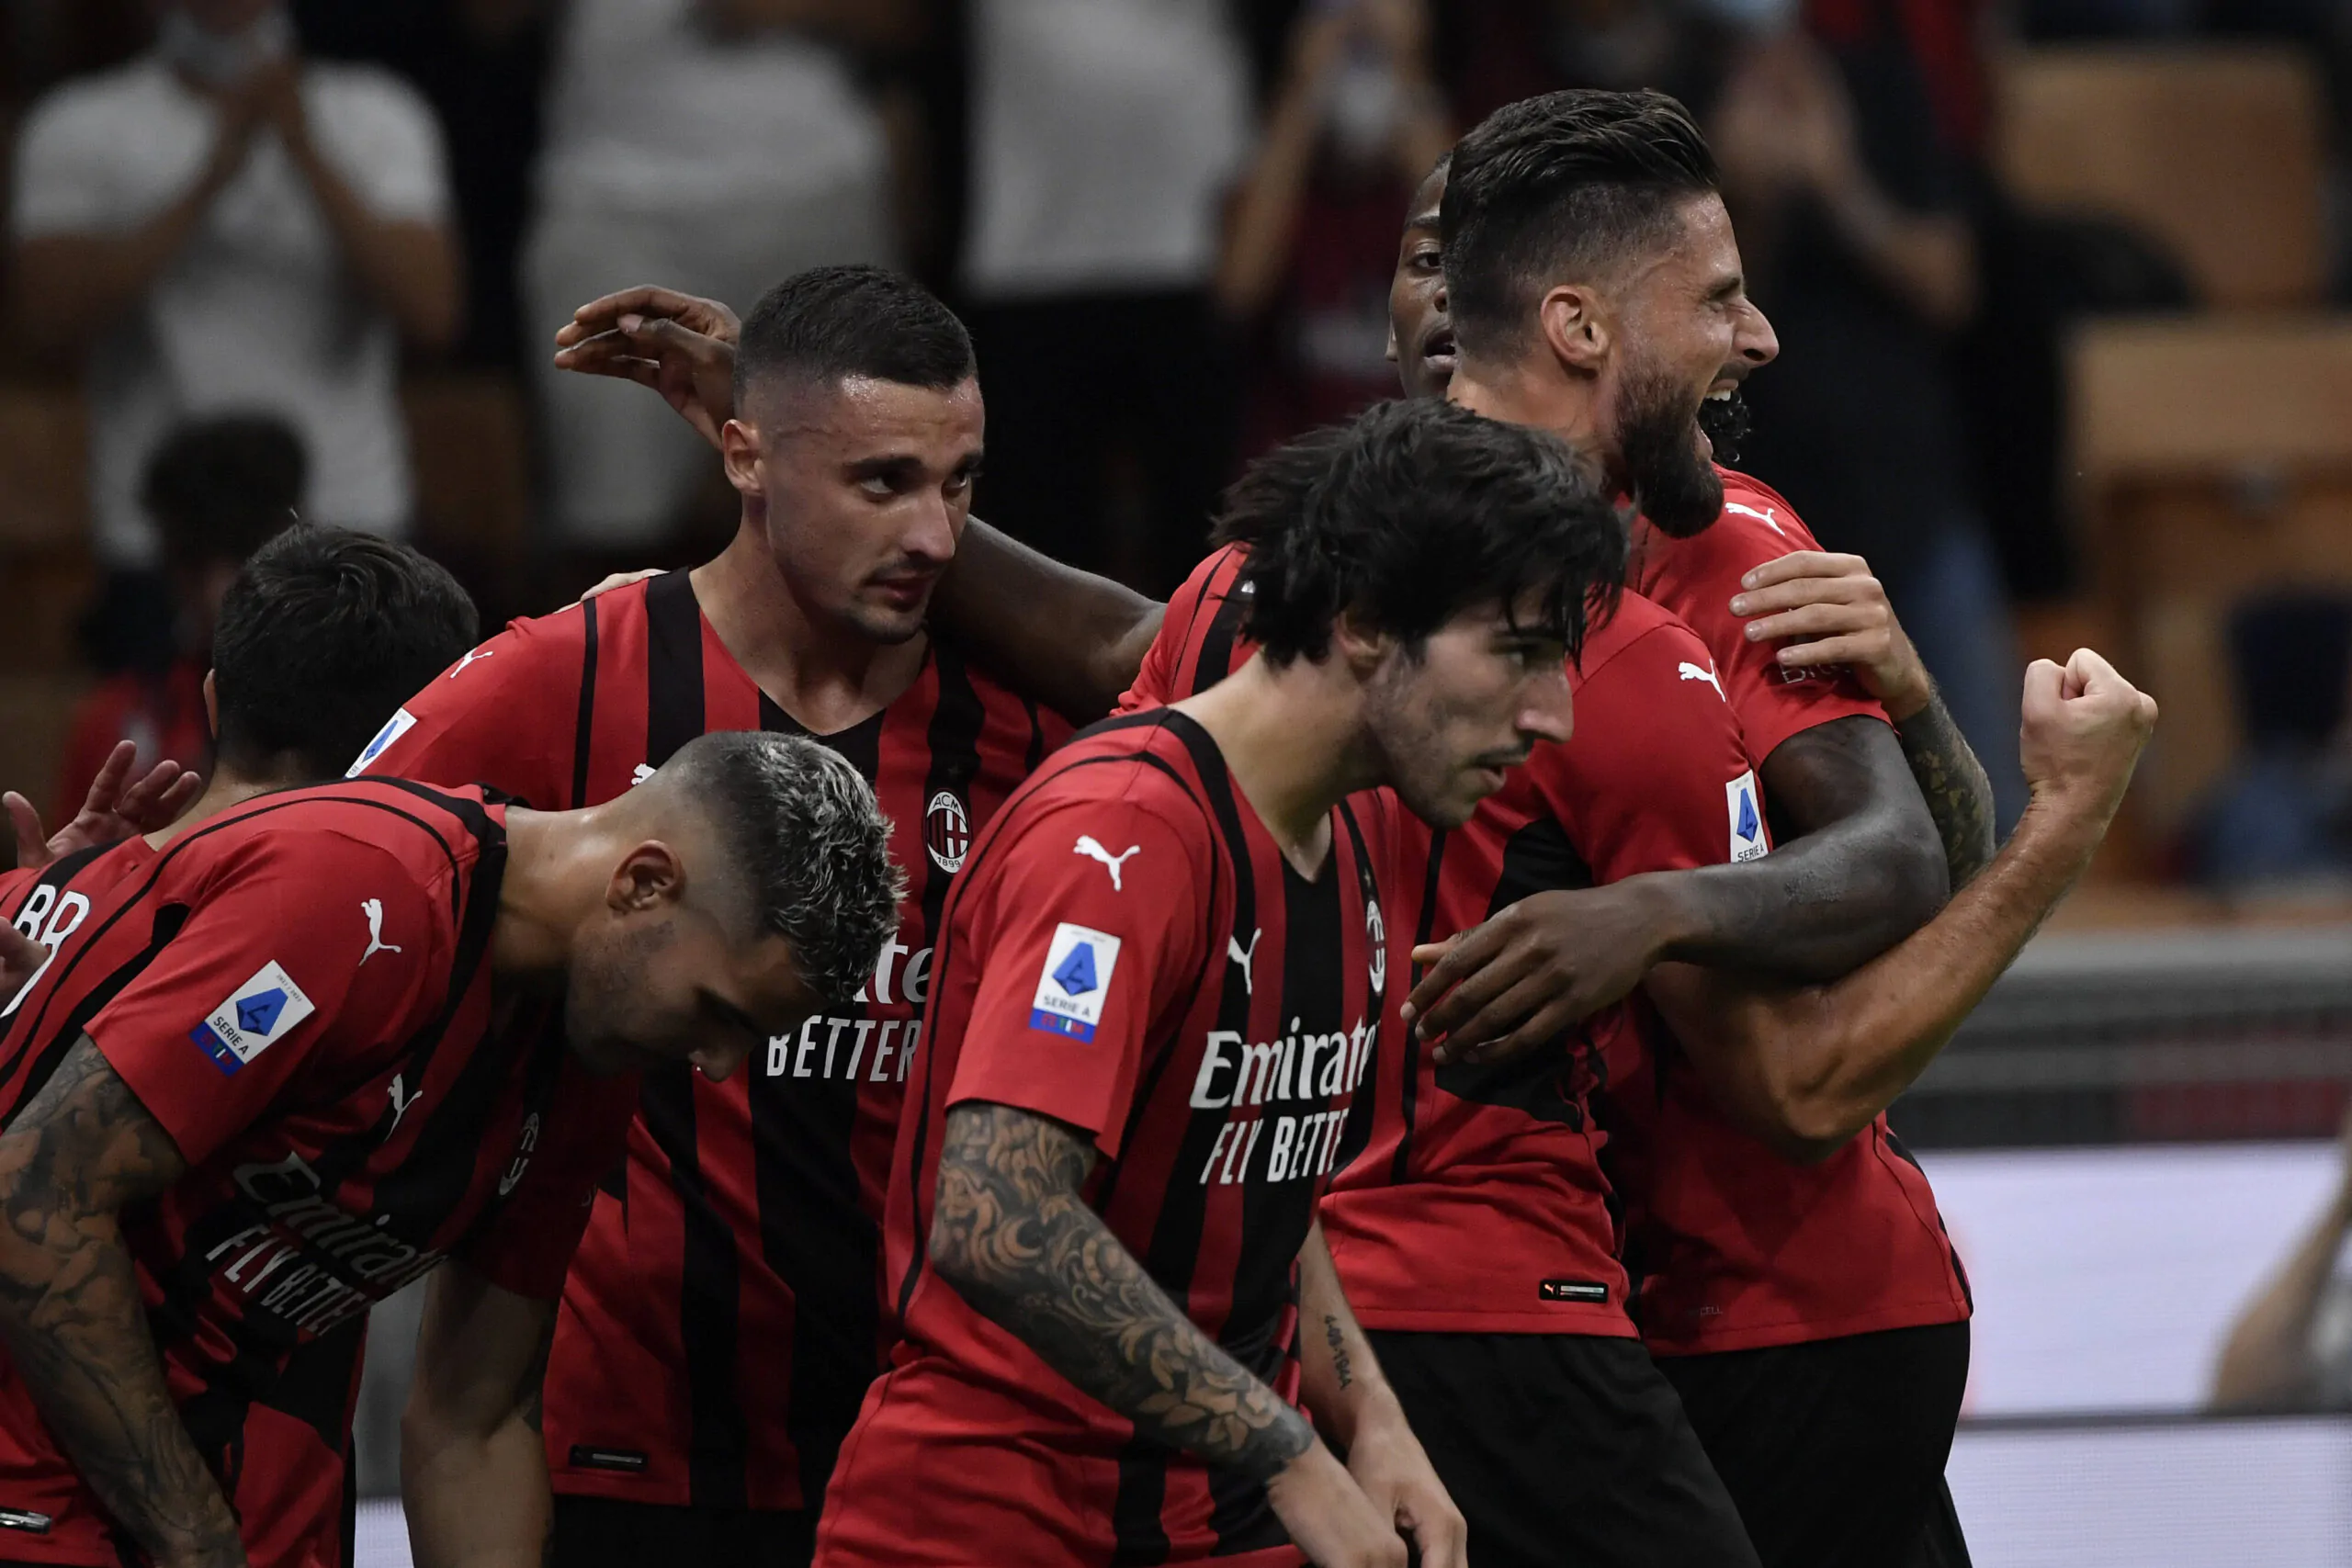 “Derby pesante per i nerazzurri”: le parole dell’esperto su Milan-Inter